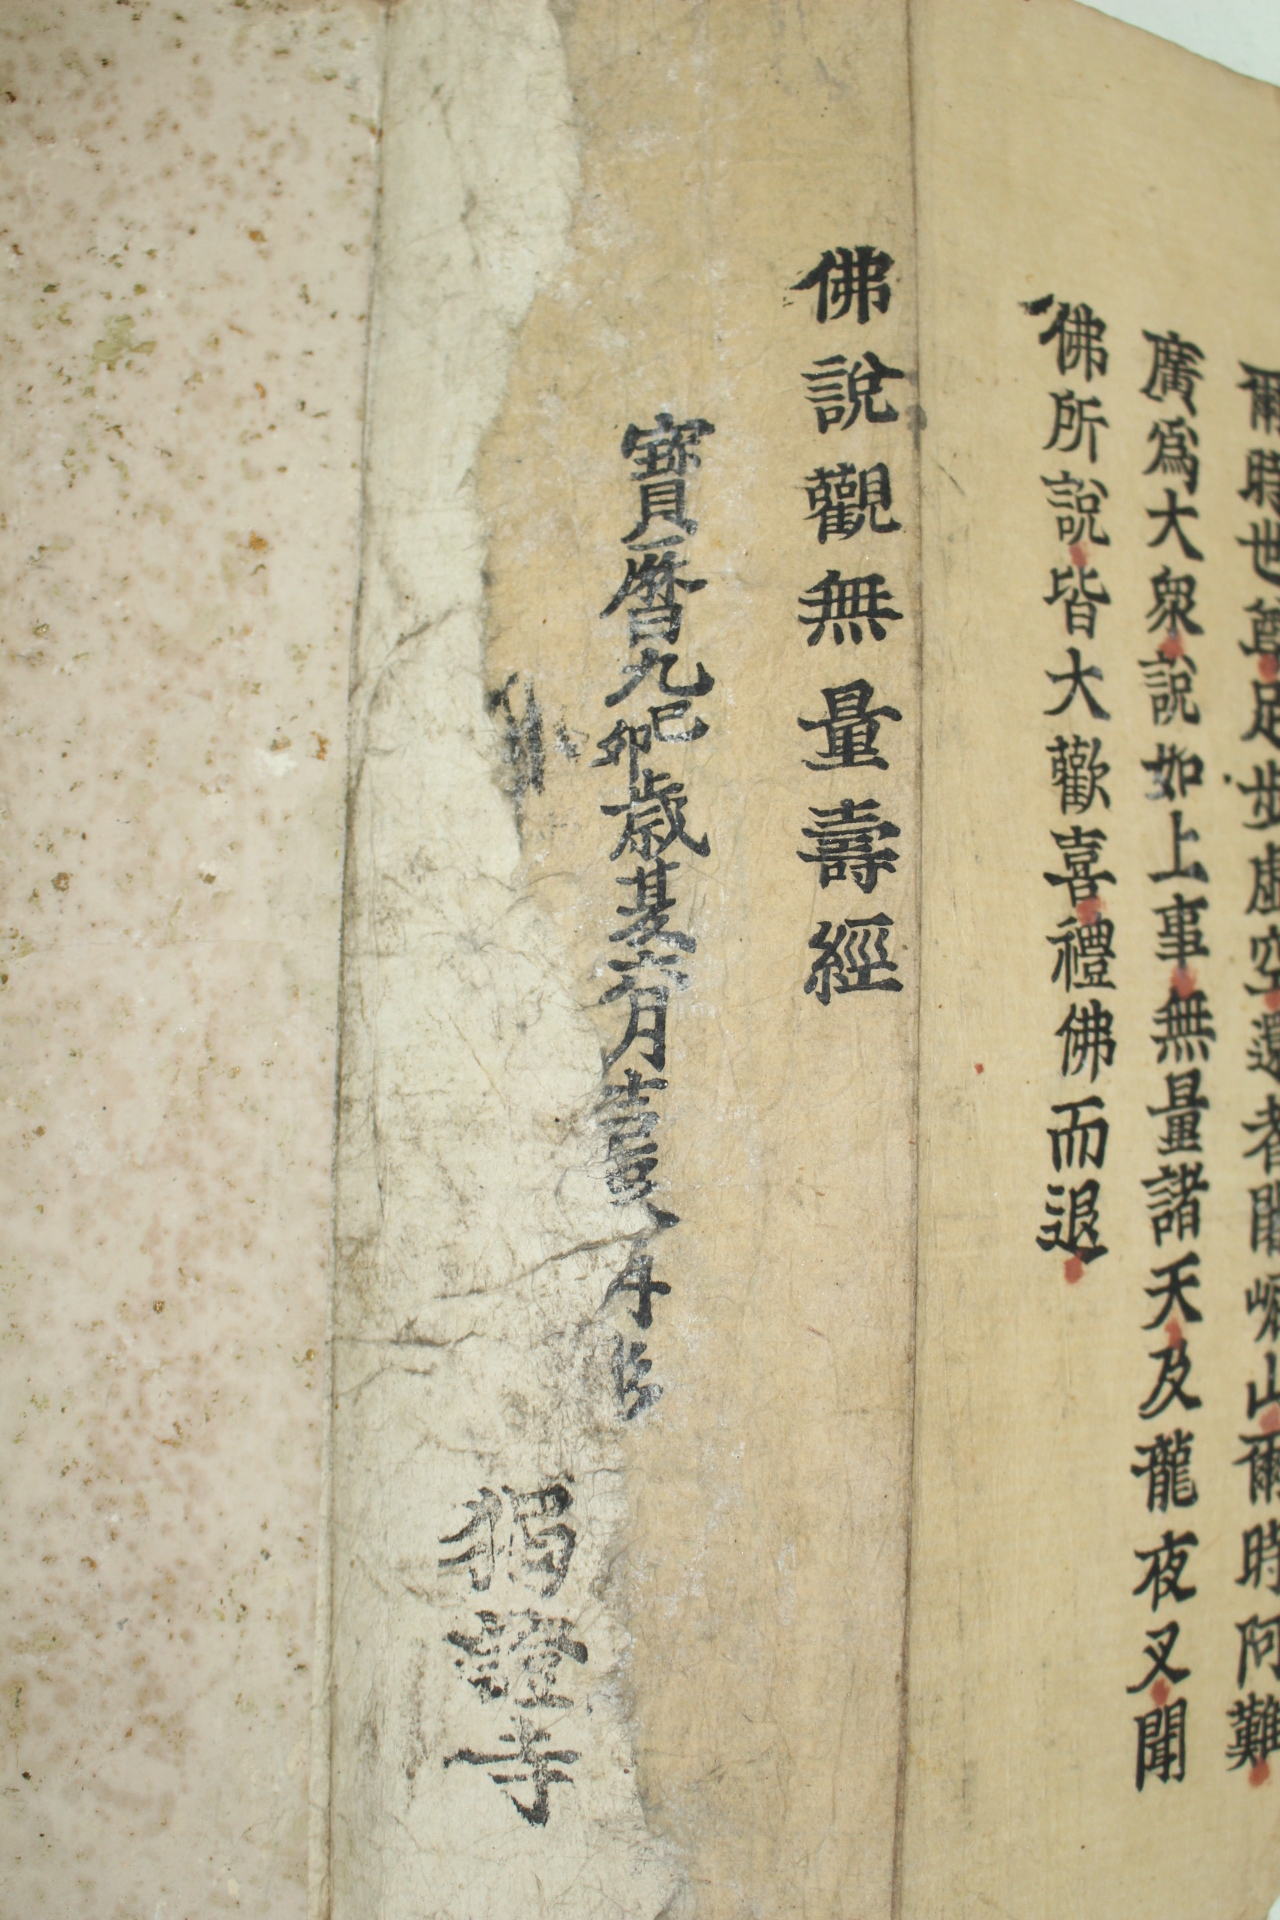 1759년(寶曆九年) 호레키9년 목판본 불설관무량수경(佛說觀無量壽經)1책완질 불경